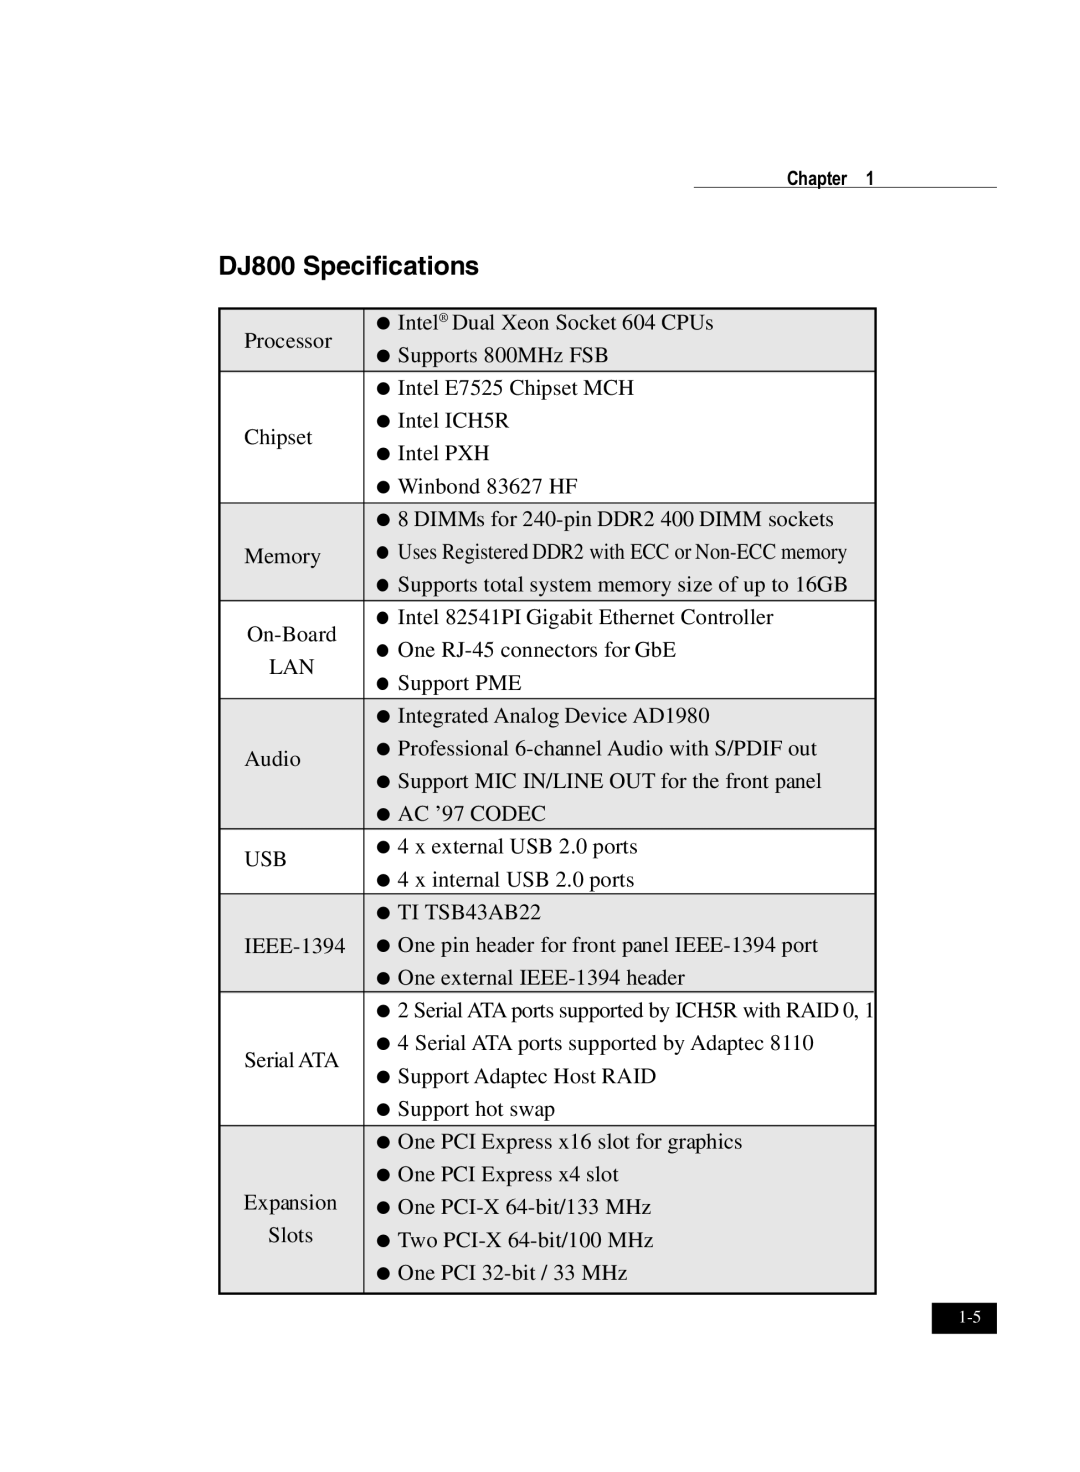 IBM user manual DJ800 Specifications 